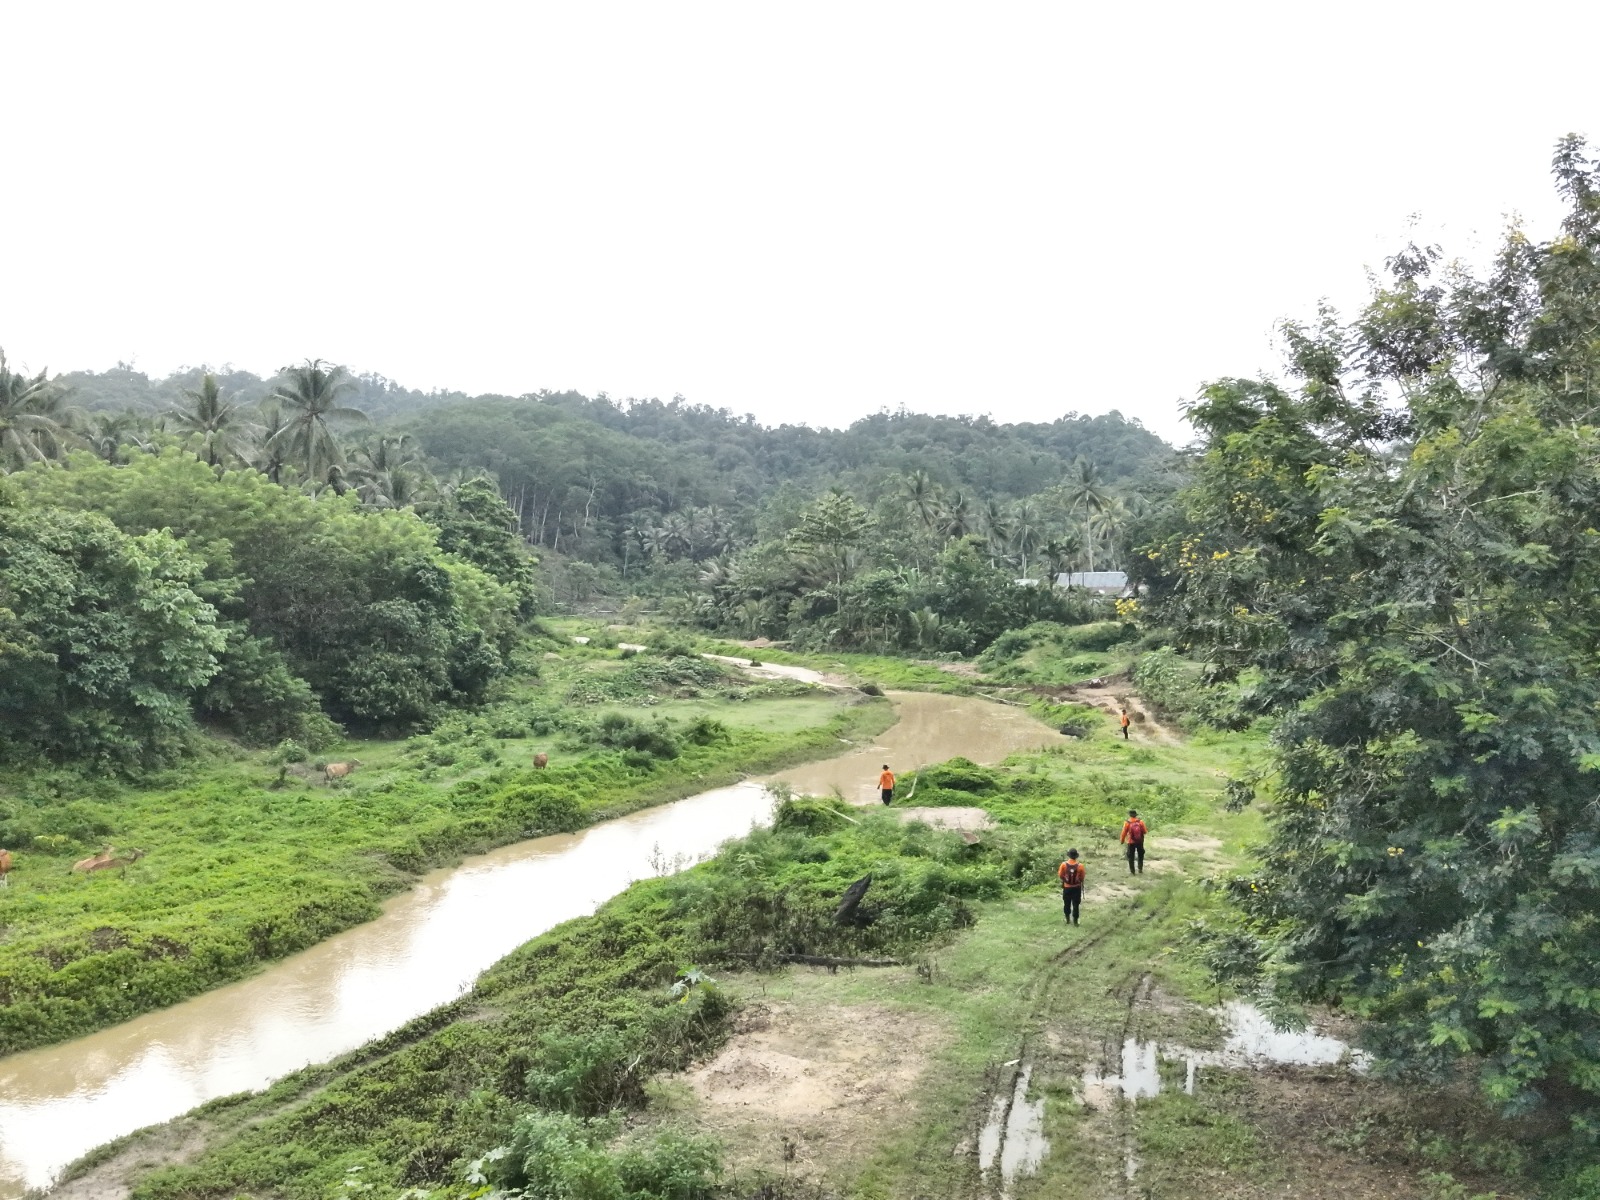 Proses Pencarian Supriadi Warga Desa Sumber Sari, Kecamatan Moramo, Kabupaten Konawe Selatan, Sulawesi Tenggara yang hilang misterius di Hutan